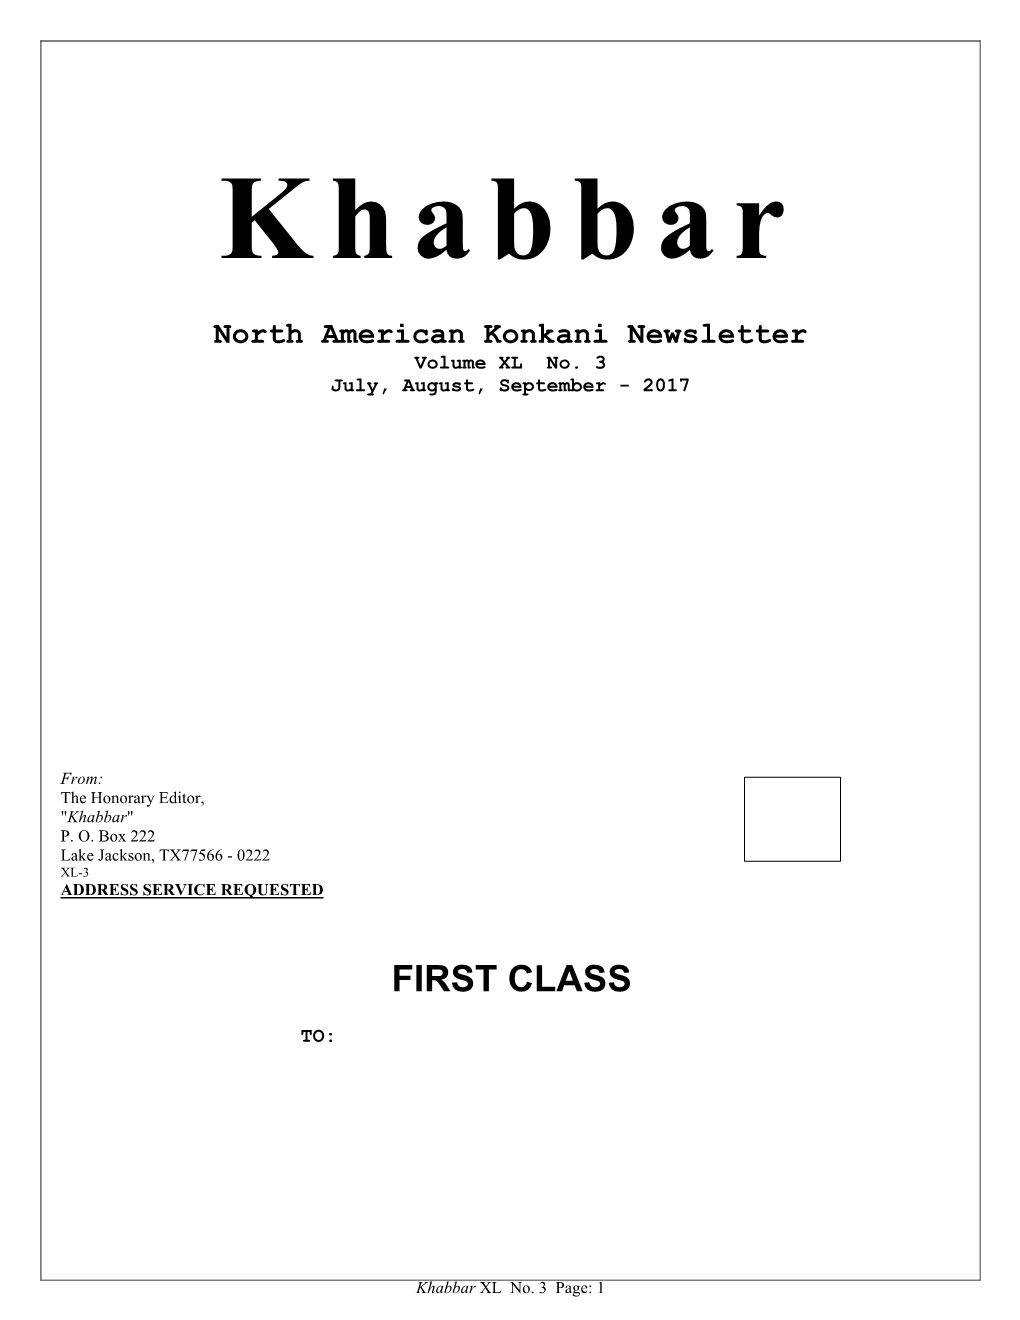 Khabbar Vol. XL No. 3 (July, August, September